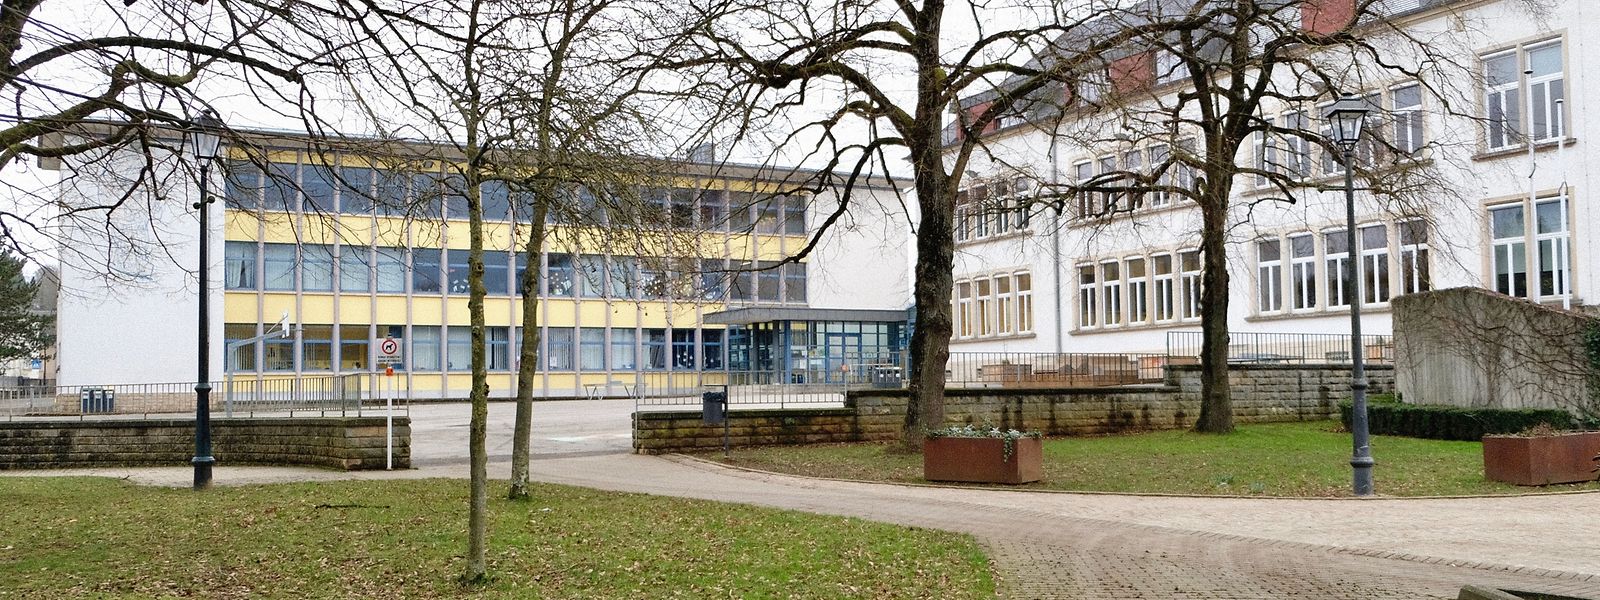 Die Mädchenschule wird abgerissen und durch ein L-Gebäude ersetzt, die Knabenschule, rechts im Bild, umgebaut.